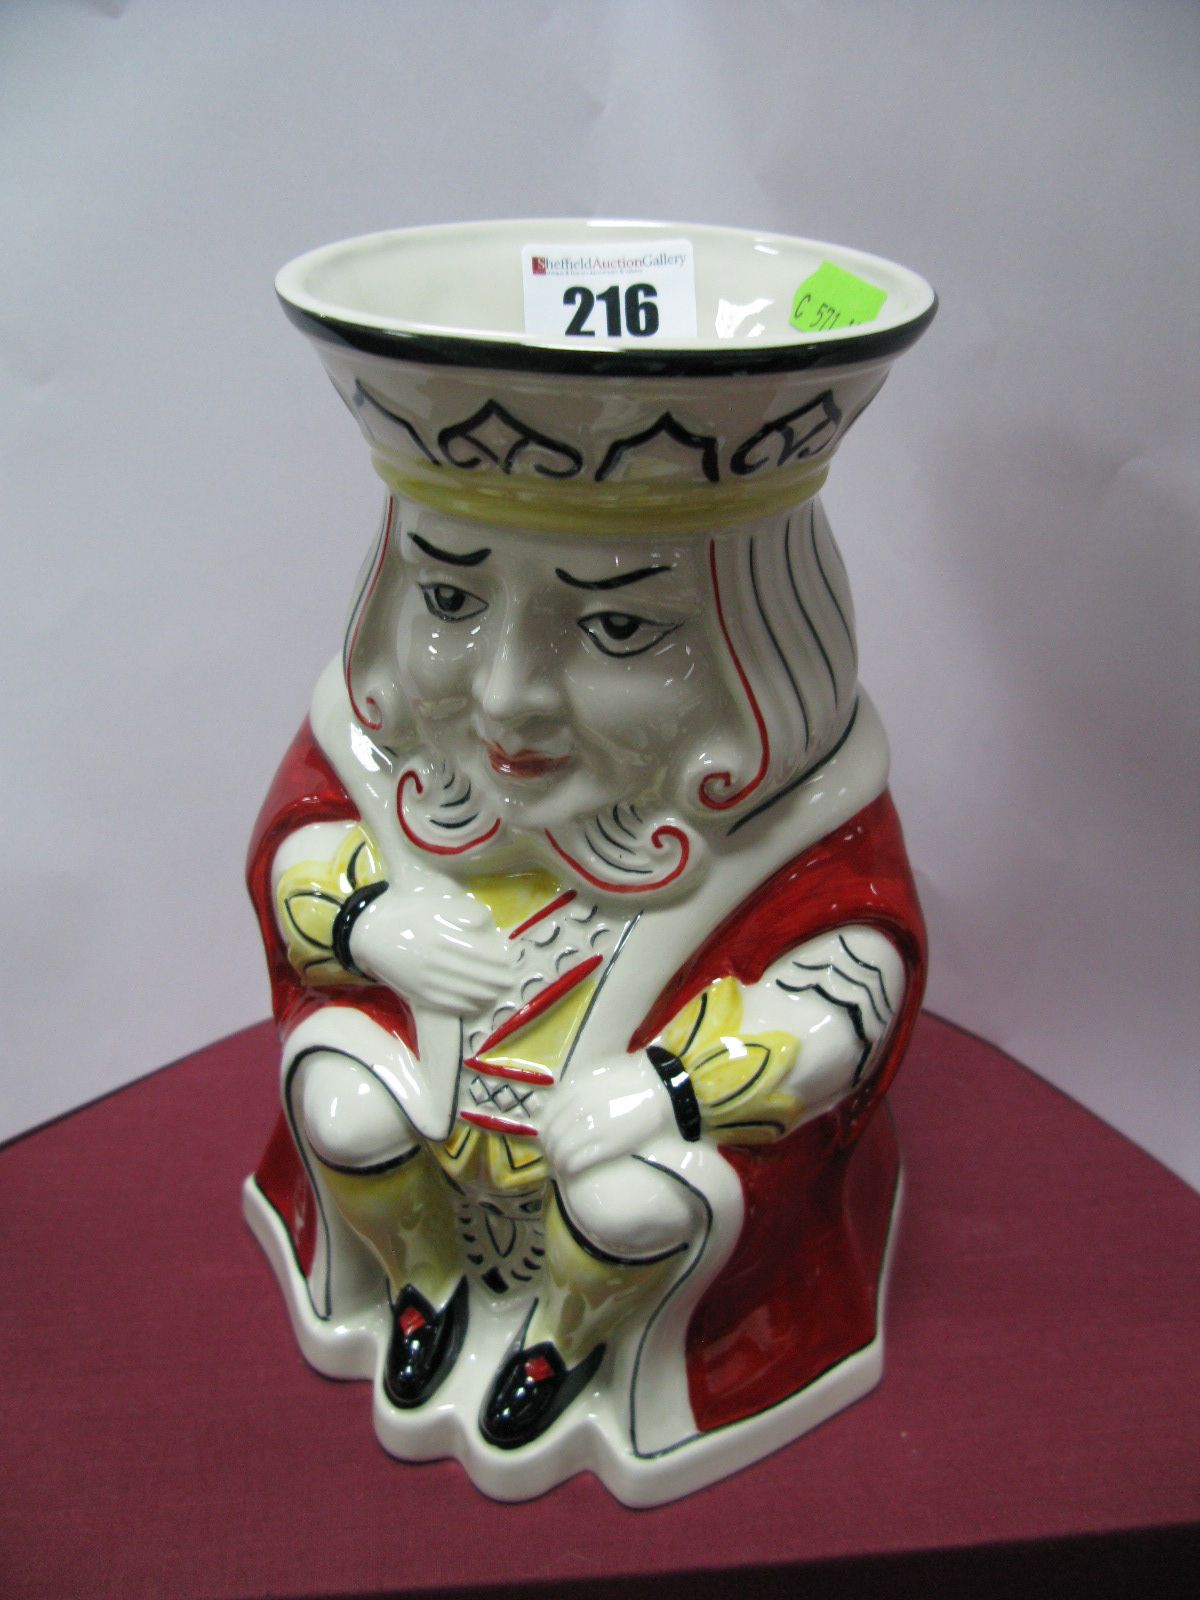 A Lorna Bailey "King of Hearts" Vase, prototype.